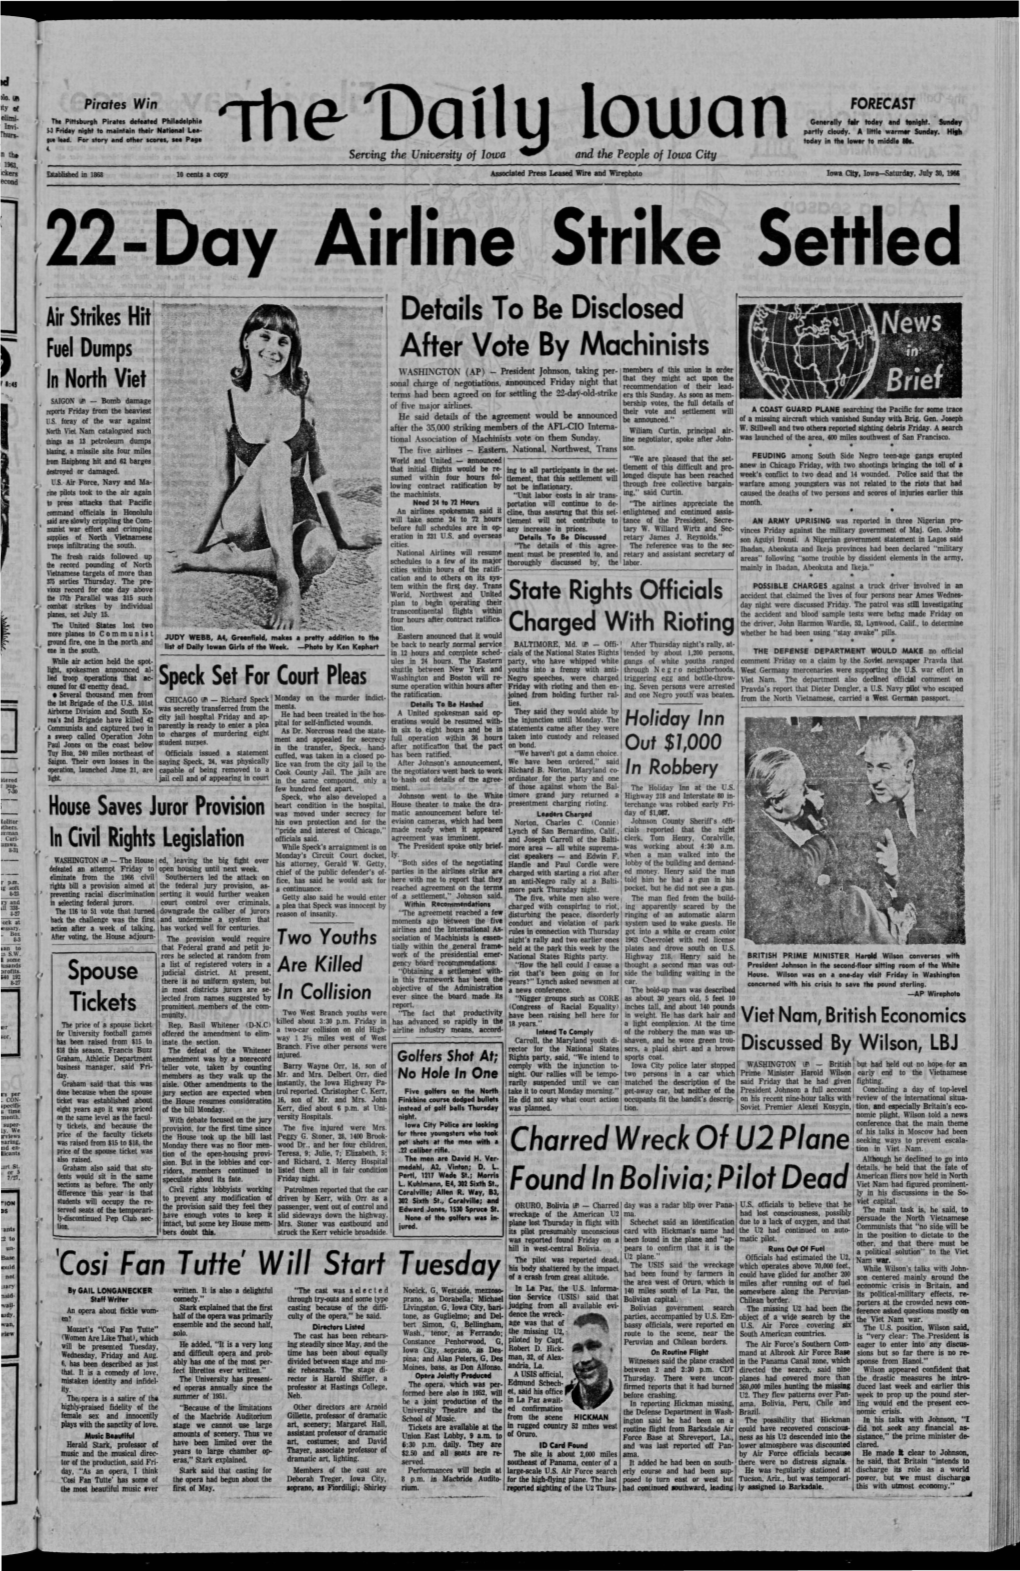 Daily Iowan (Iowa City, Iowa), 1966-07-30